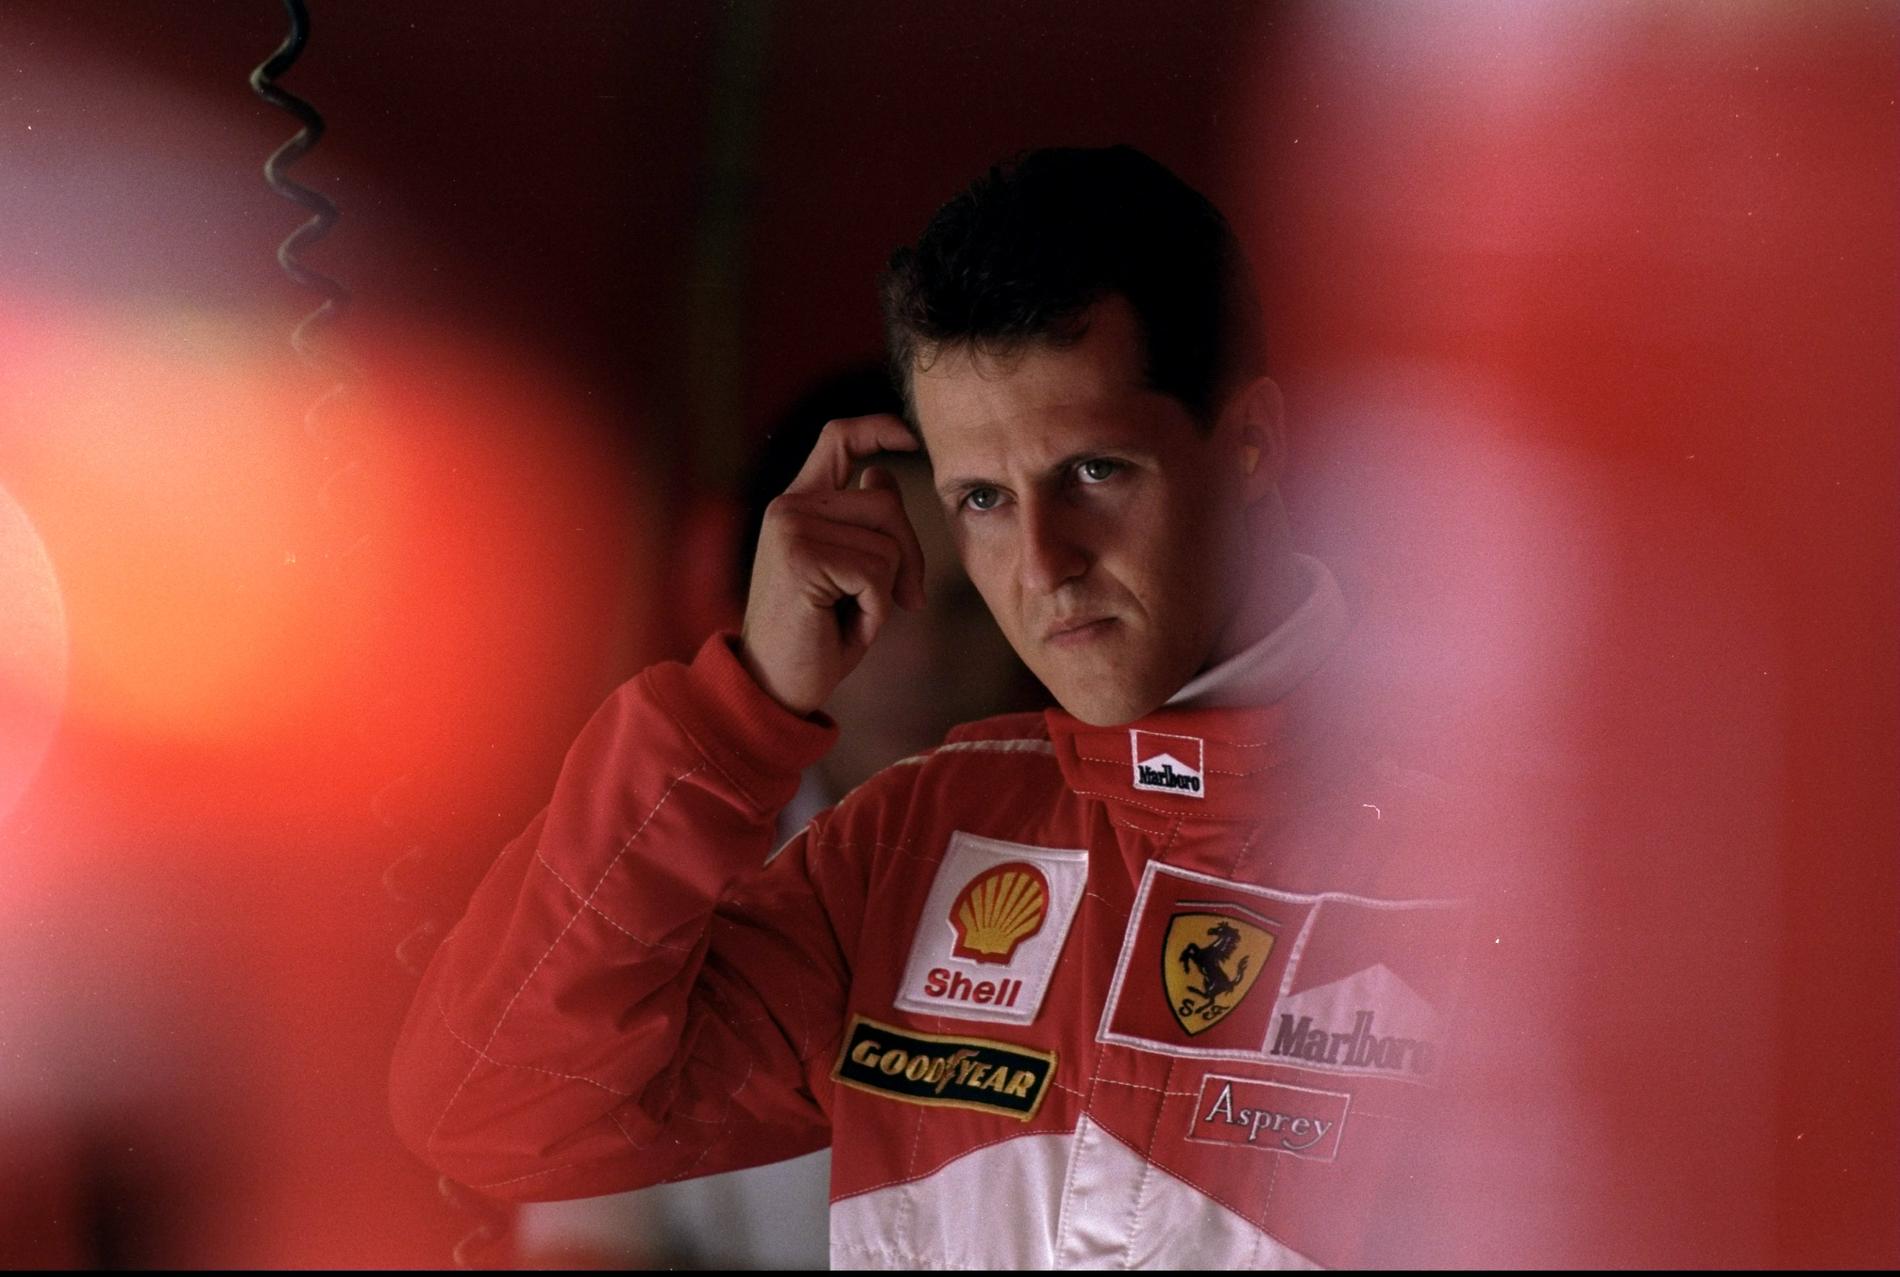 Tio år har gått sedan Michael Schumachers olycka.